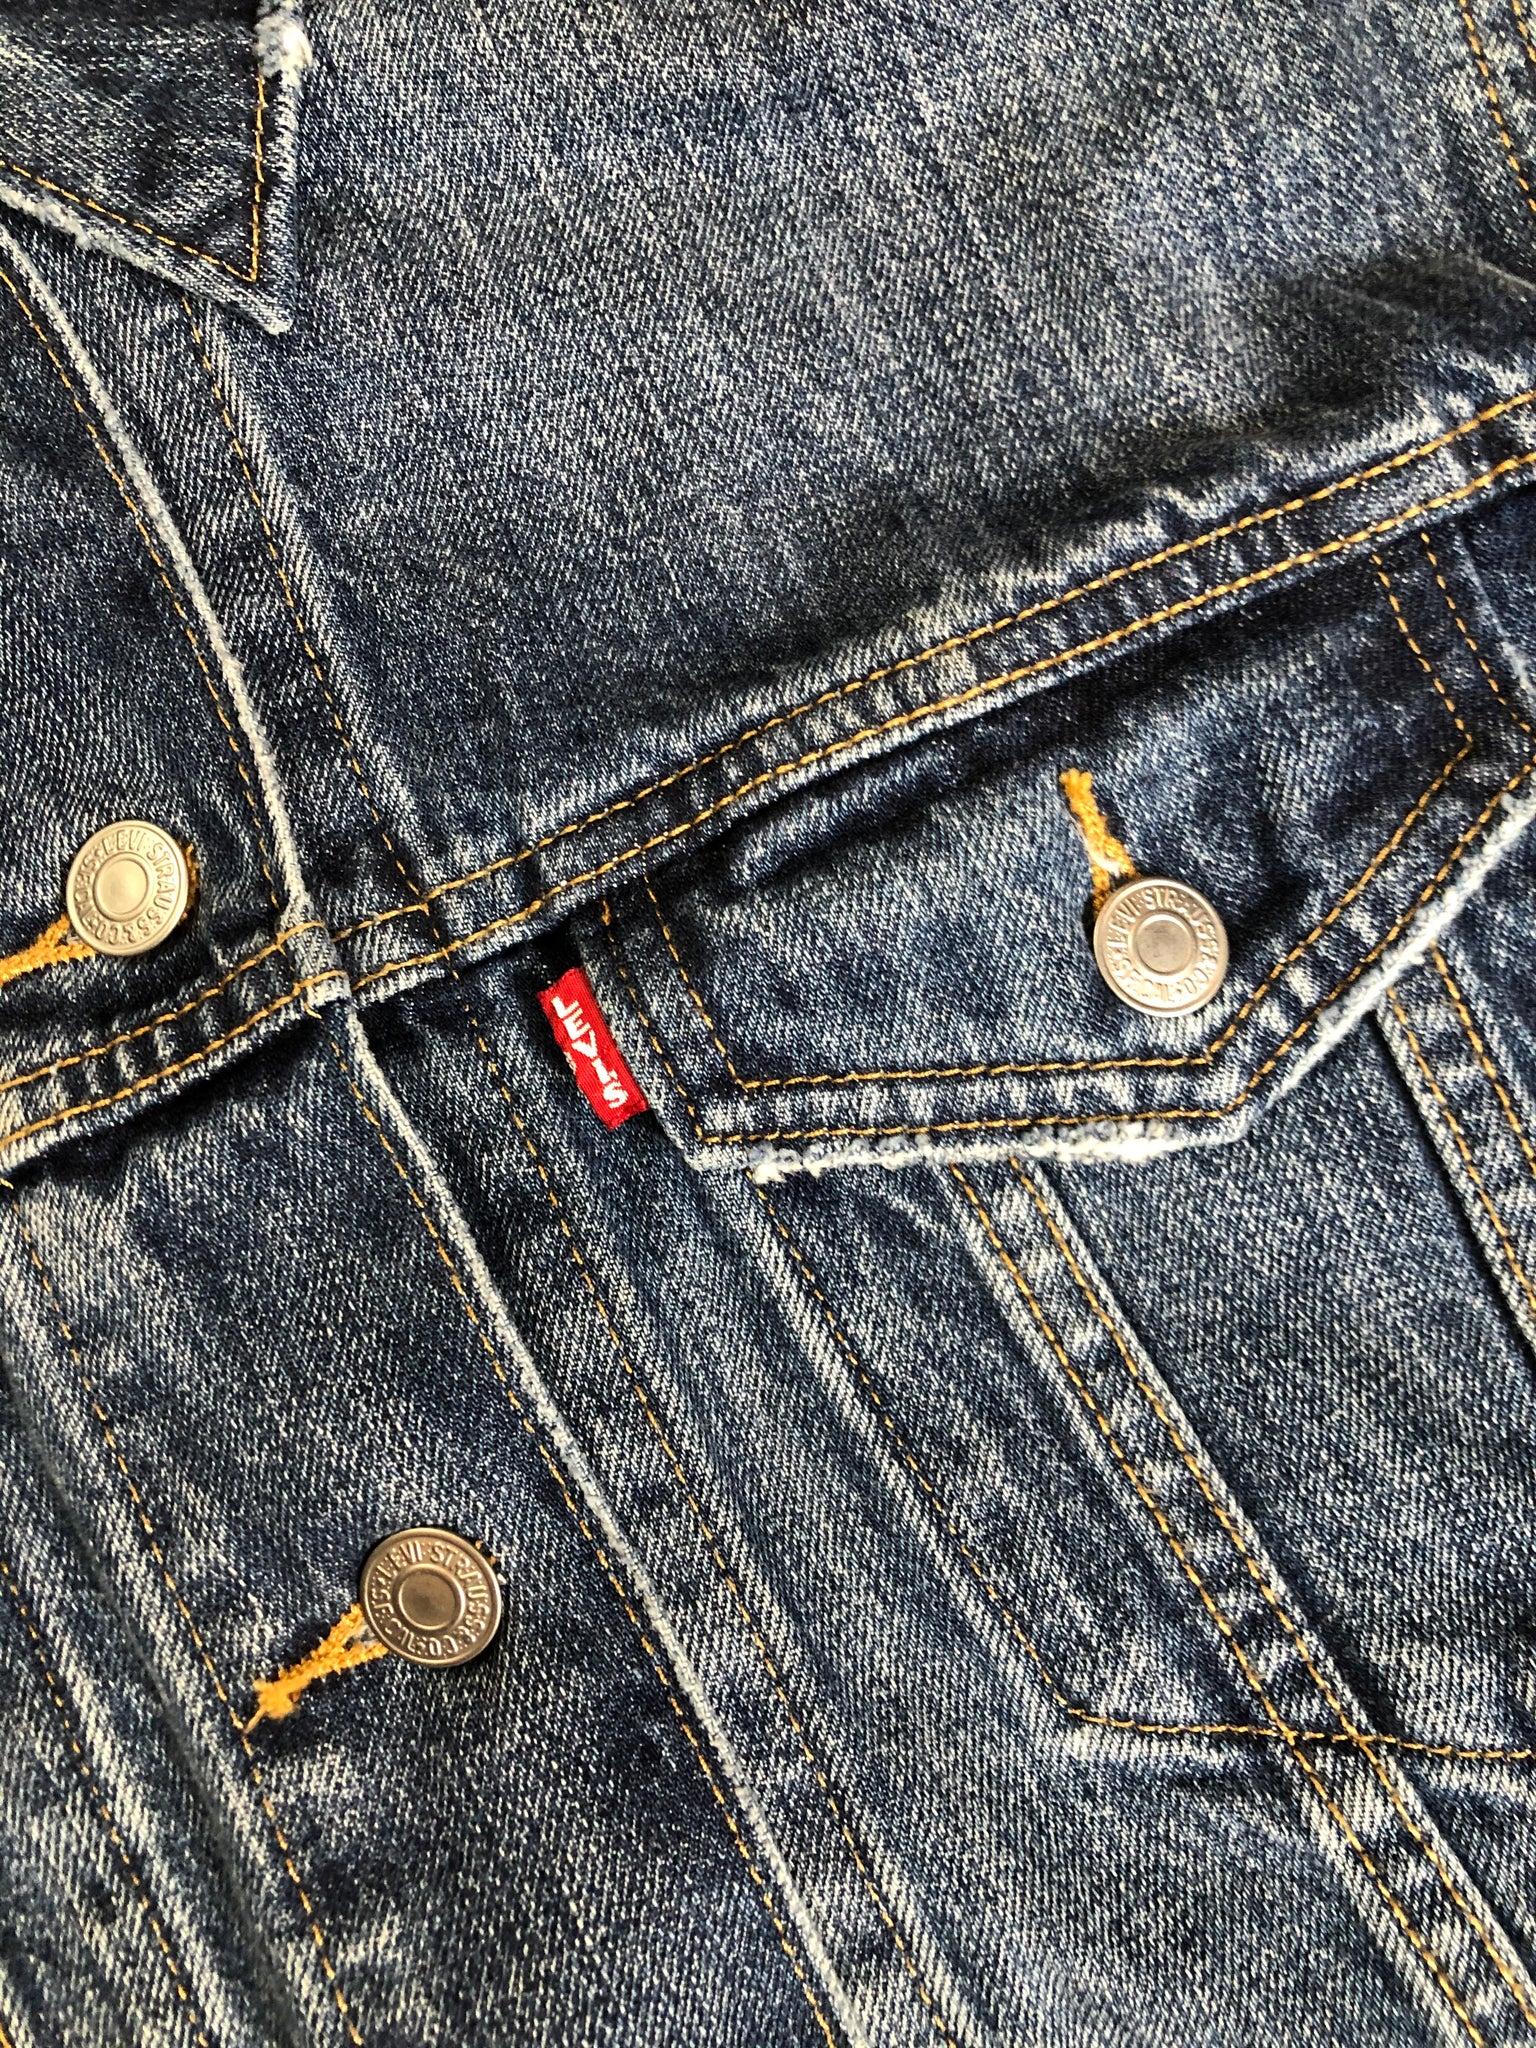 Levi's Multi-Pocket Jean Jackets for Men | Mercari